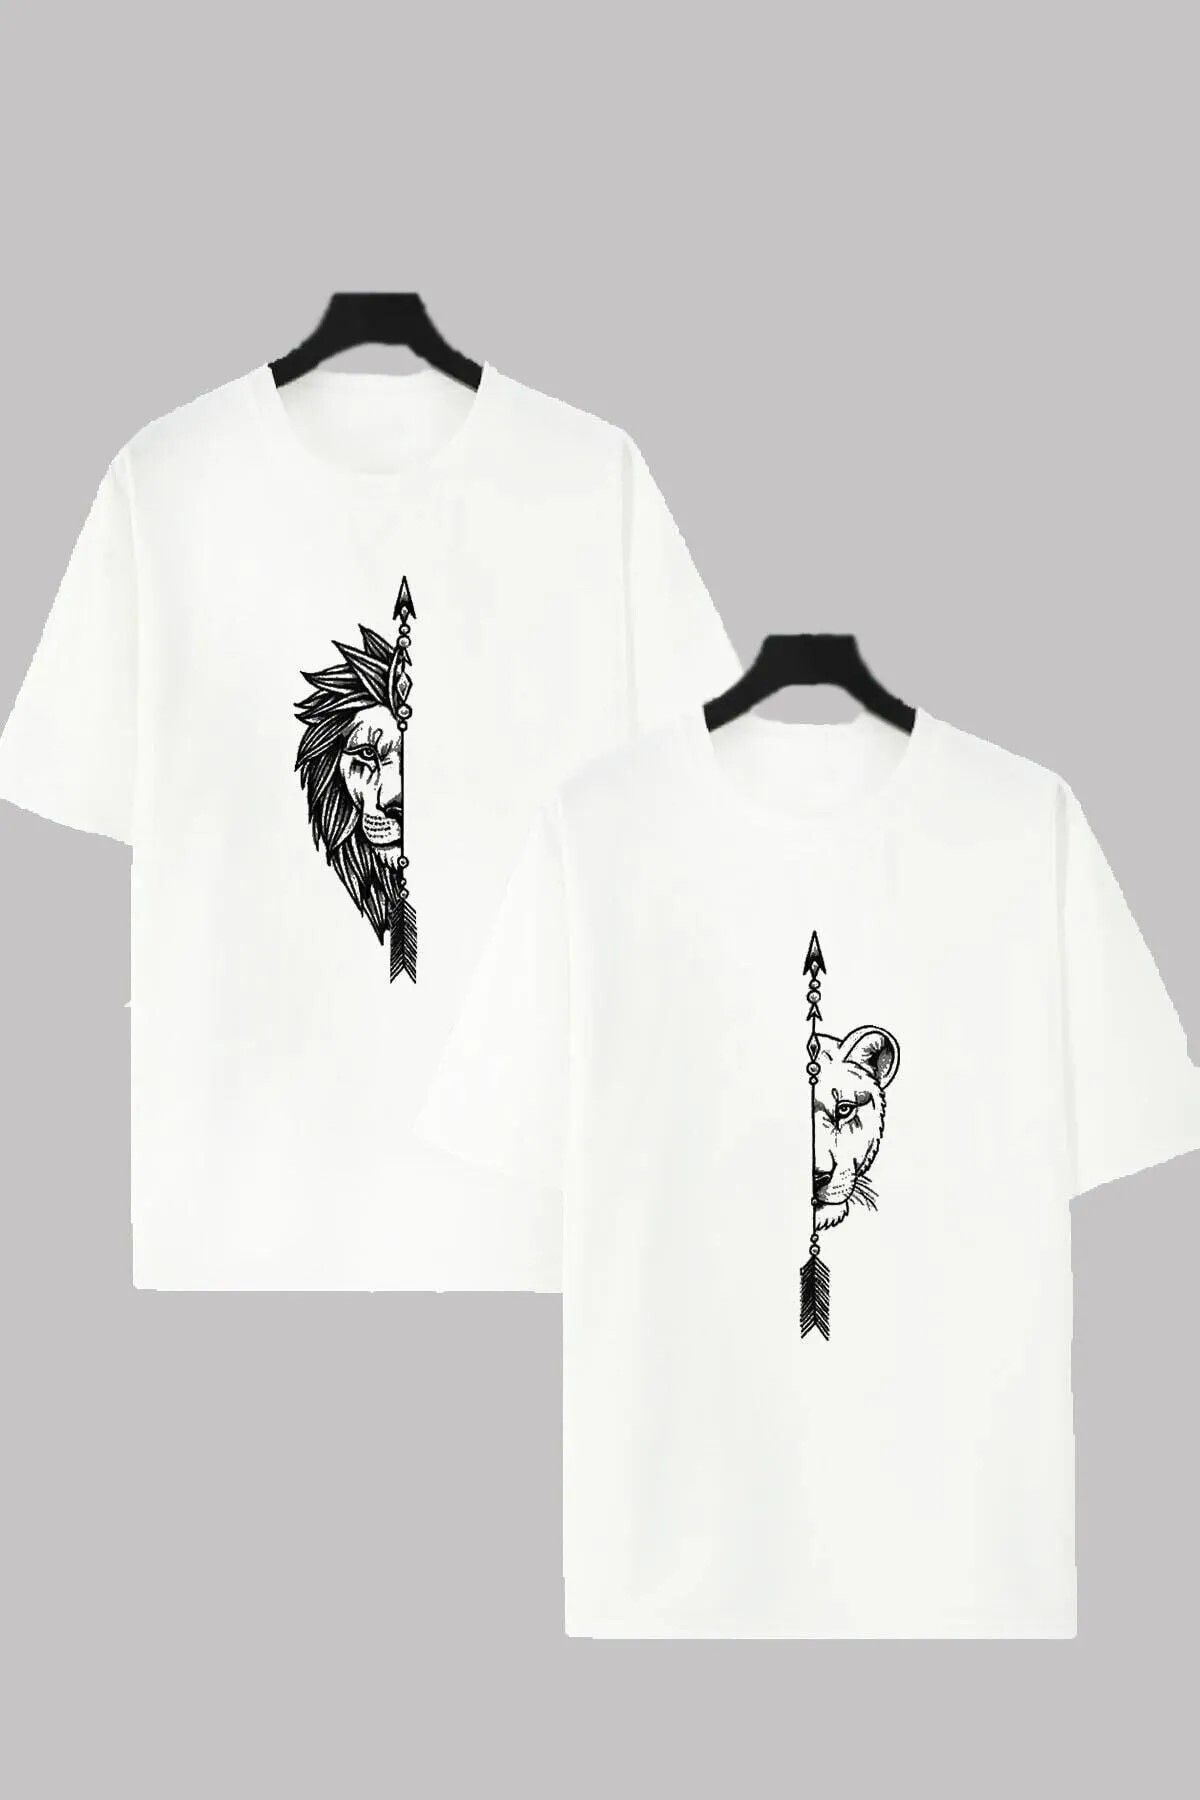 Unique Kadın Erkek Dişi ve Erkek Aslan Çiftler Sevgili Çift Kombini Tasarım Oversize T-shirt 2'li Takım